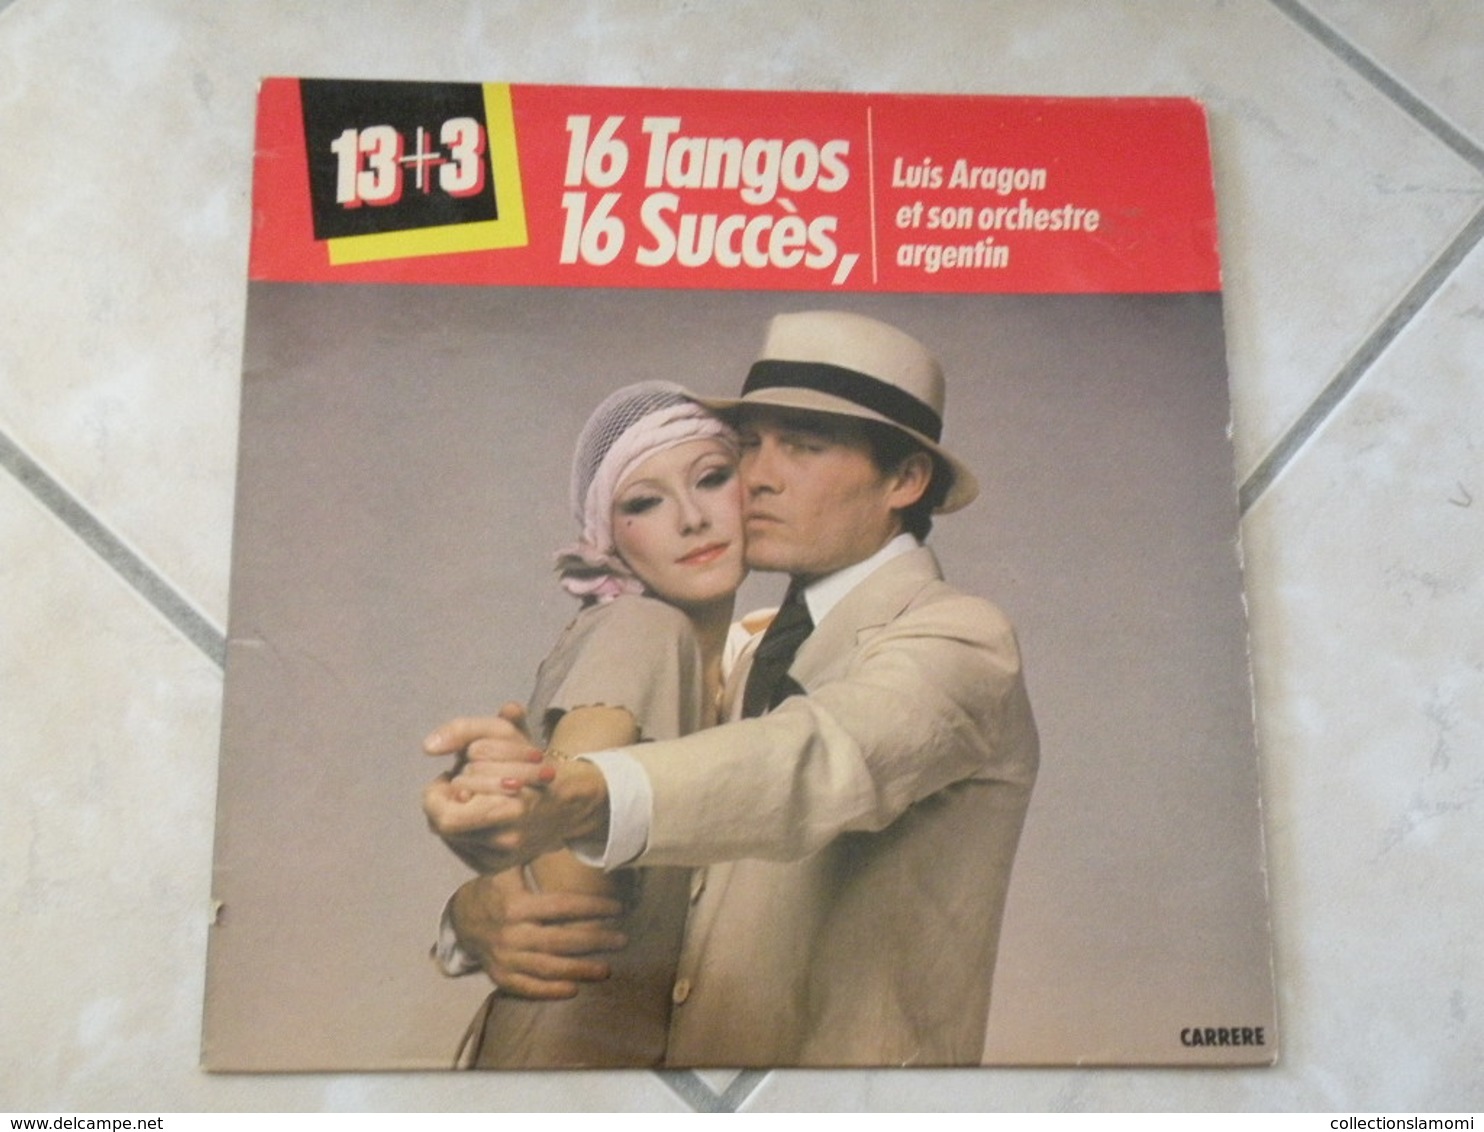 Luis Aragon Et Son Orchestre Argentin (16 Tangos) - (Titres Sur Photos) - Vinyle 33 T LP - Humour, Cabaret